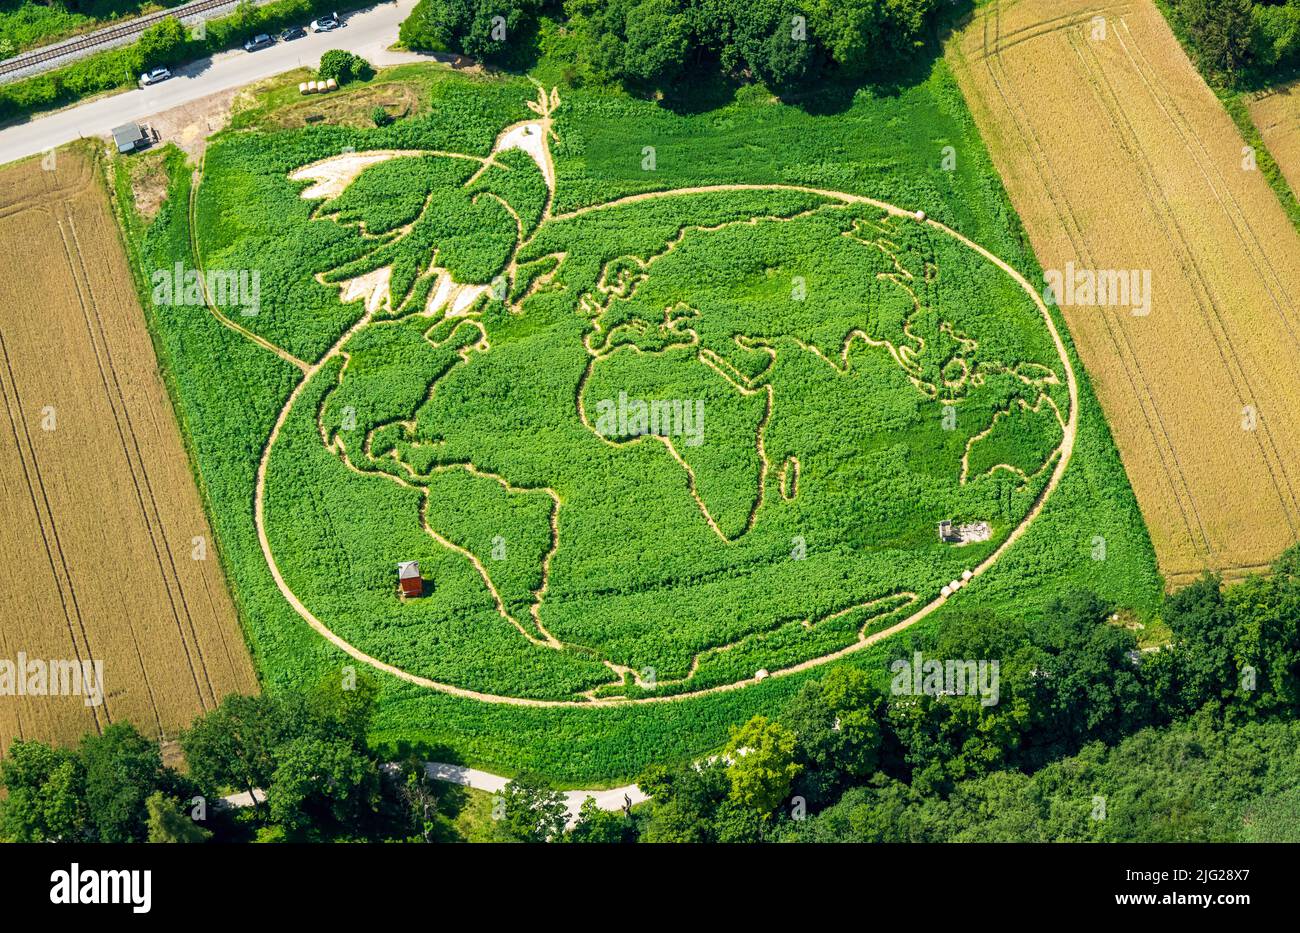 06 juillet 2022, Bavière, Utting am Ammersee: La vue aérienne montre un champ de plantes conçu avec soin, non loin du lac Ammersee en haute-Bavière, dans lequel les agriculteurs Corinne et Uli Ernst et une équipe de 20 ont incorporé un labyrinthe. Il dispose d'une colombe de paix par Picasso au-dessus de la carte du monde. La peinture surdimensionnée couvre une superficie d'environ 18 000 mètres carrés et se compose d'environ 350 000 plantes, y compris des tournesols, le chanvre, le maïs, le malow sauvage, citrouilles et haricots ornementaux. Les graines étaient déjà semées en avril. Tous les chemins ensemble sont d'environ 3,1 km de long, et depuis 1999 ils ont formé les 24 Banque D'Images